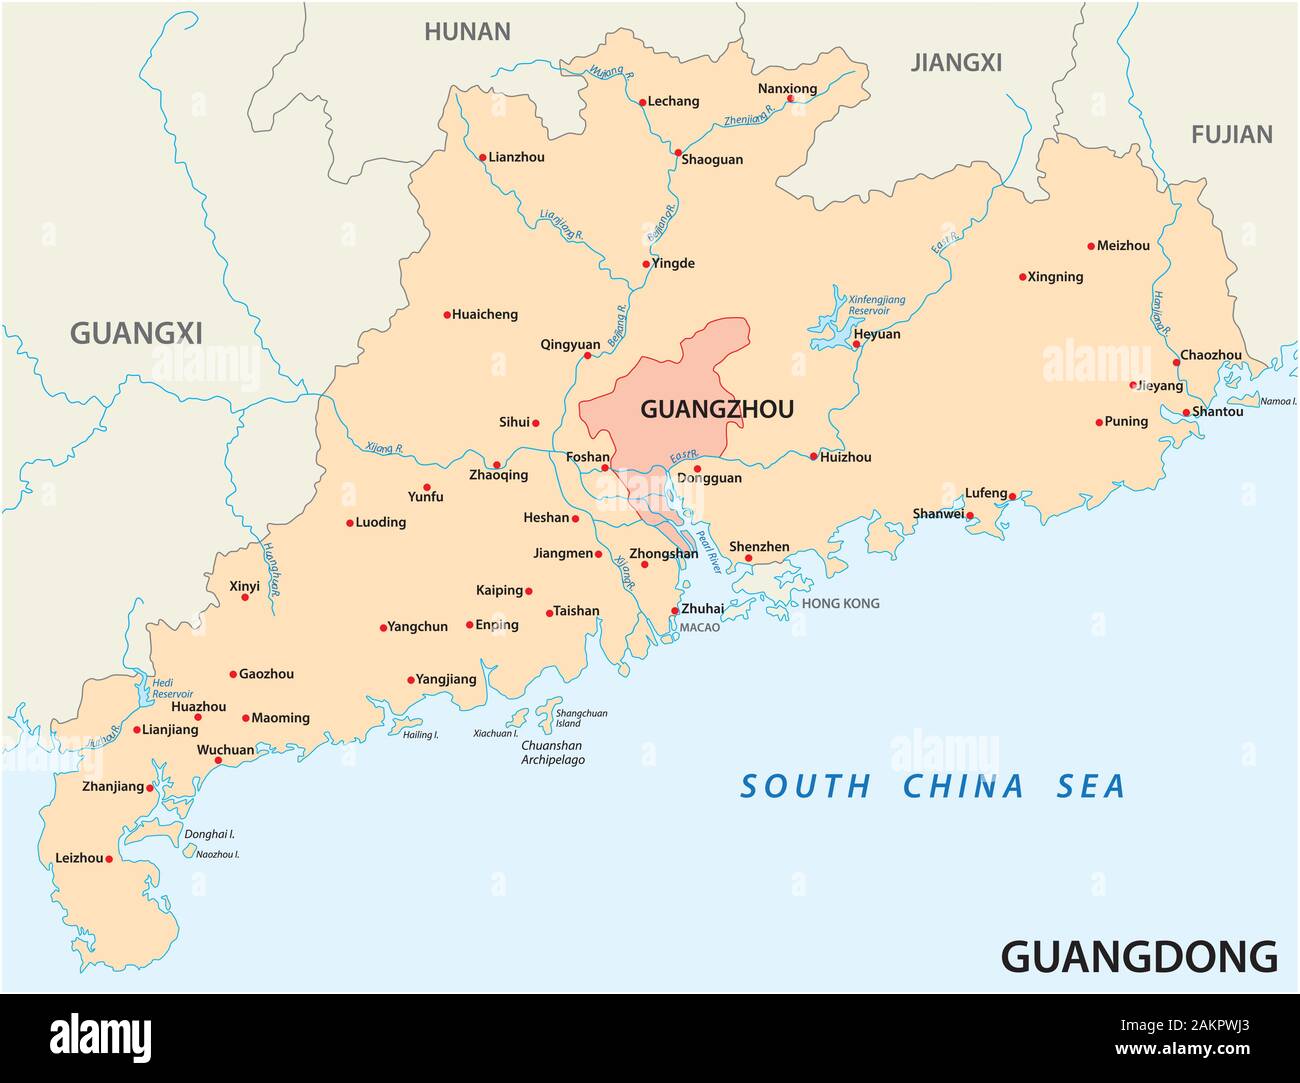 La carte du sud de la province chinoise de Guangdong avec les villes les plus importantes Illustration de Vecteur